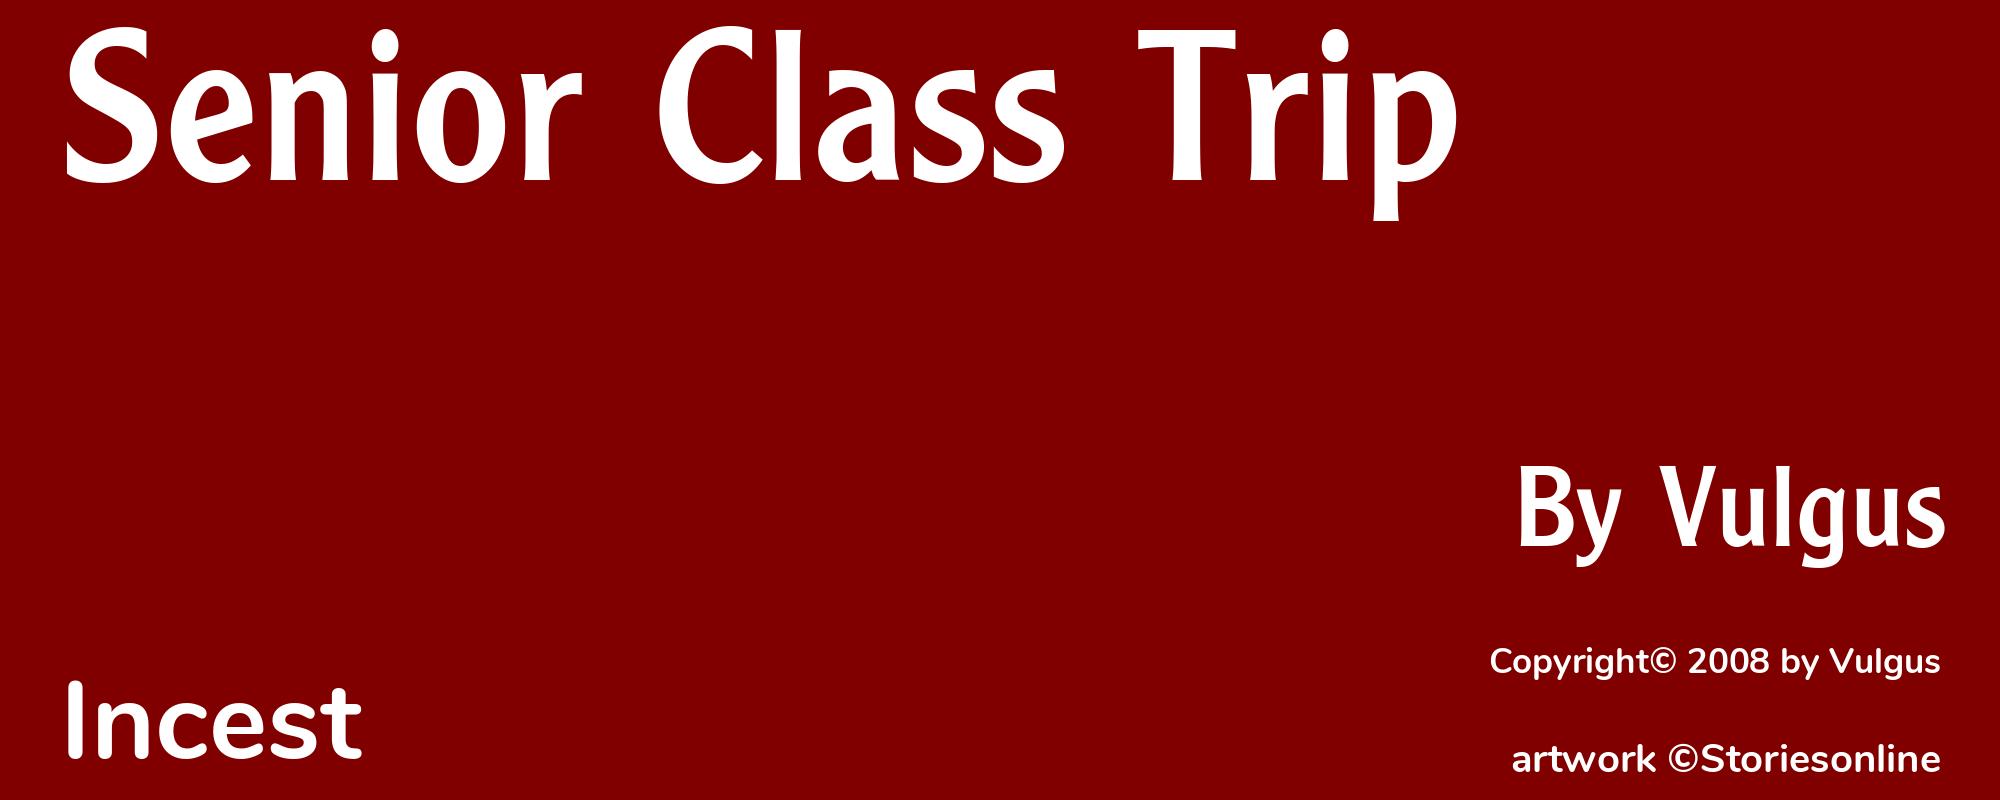 Senior Class Trip - Cover